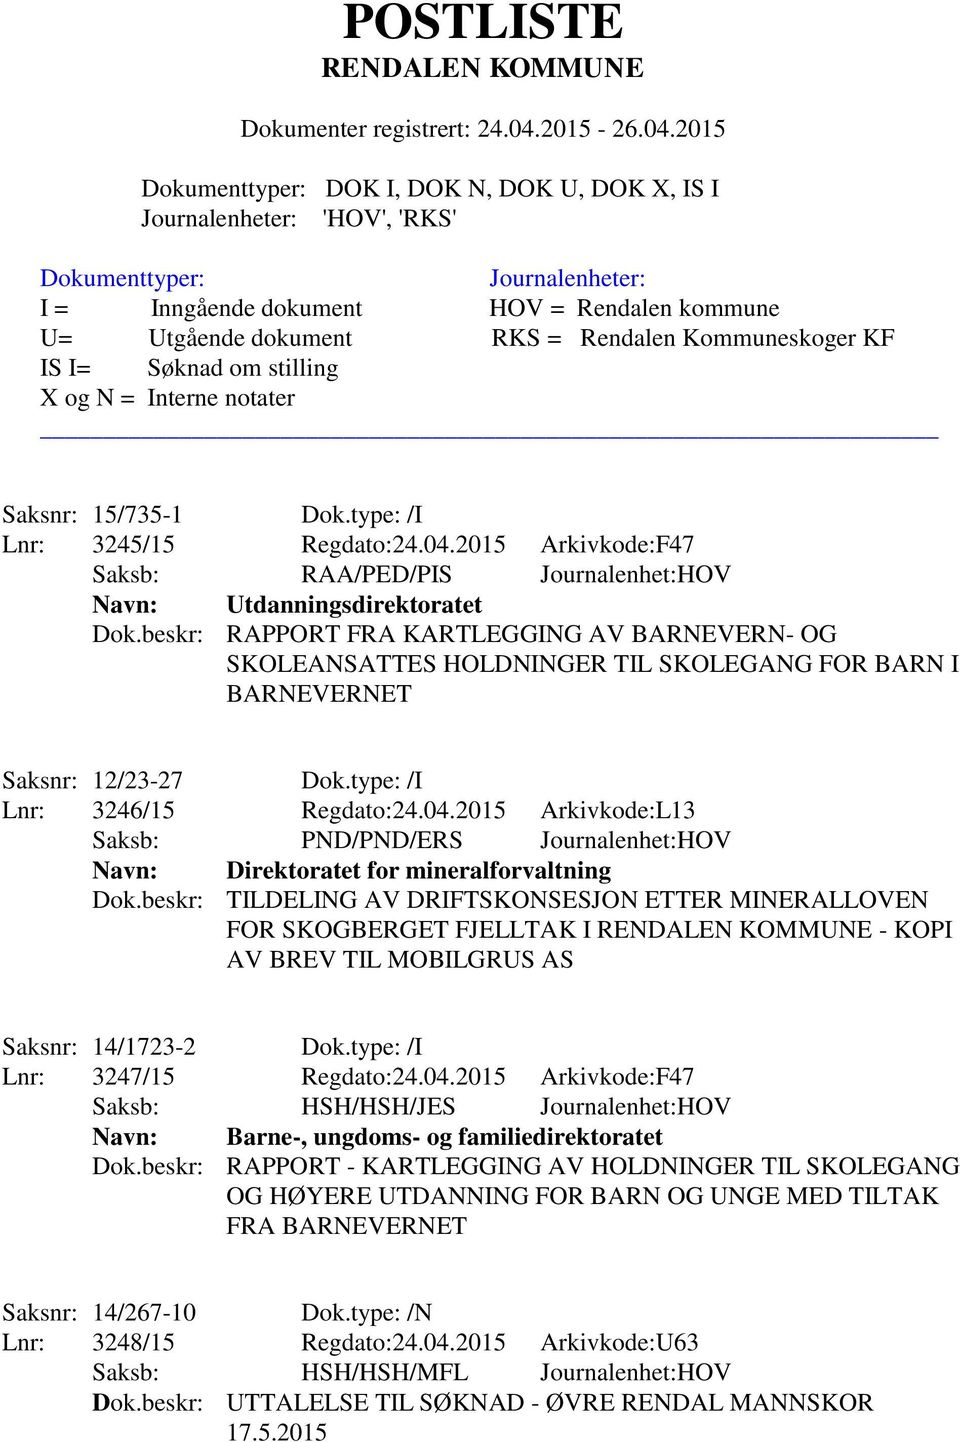 2015 Arkivkode:L13 Saksb: PND/PND/ERS Journalenhet:HOV Navn: Direktoratet for mineralforvaltning Dok.